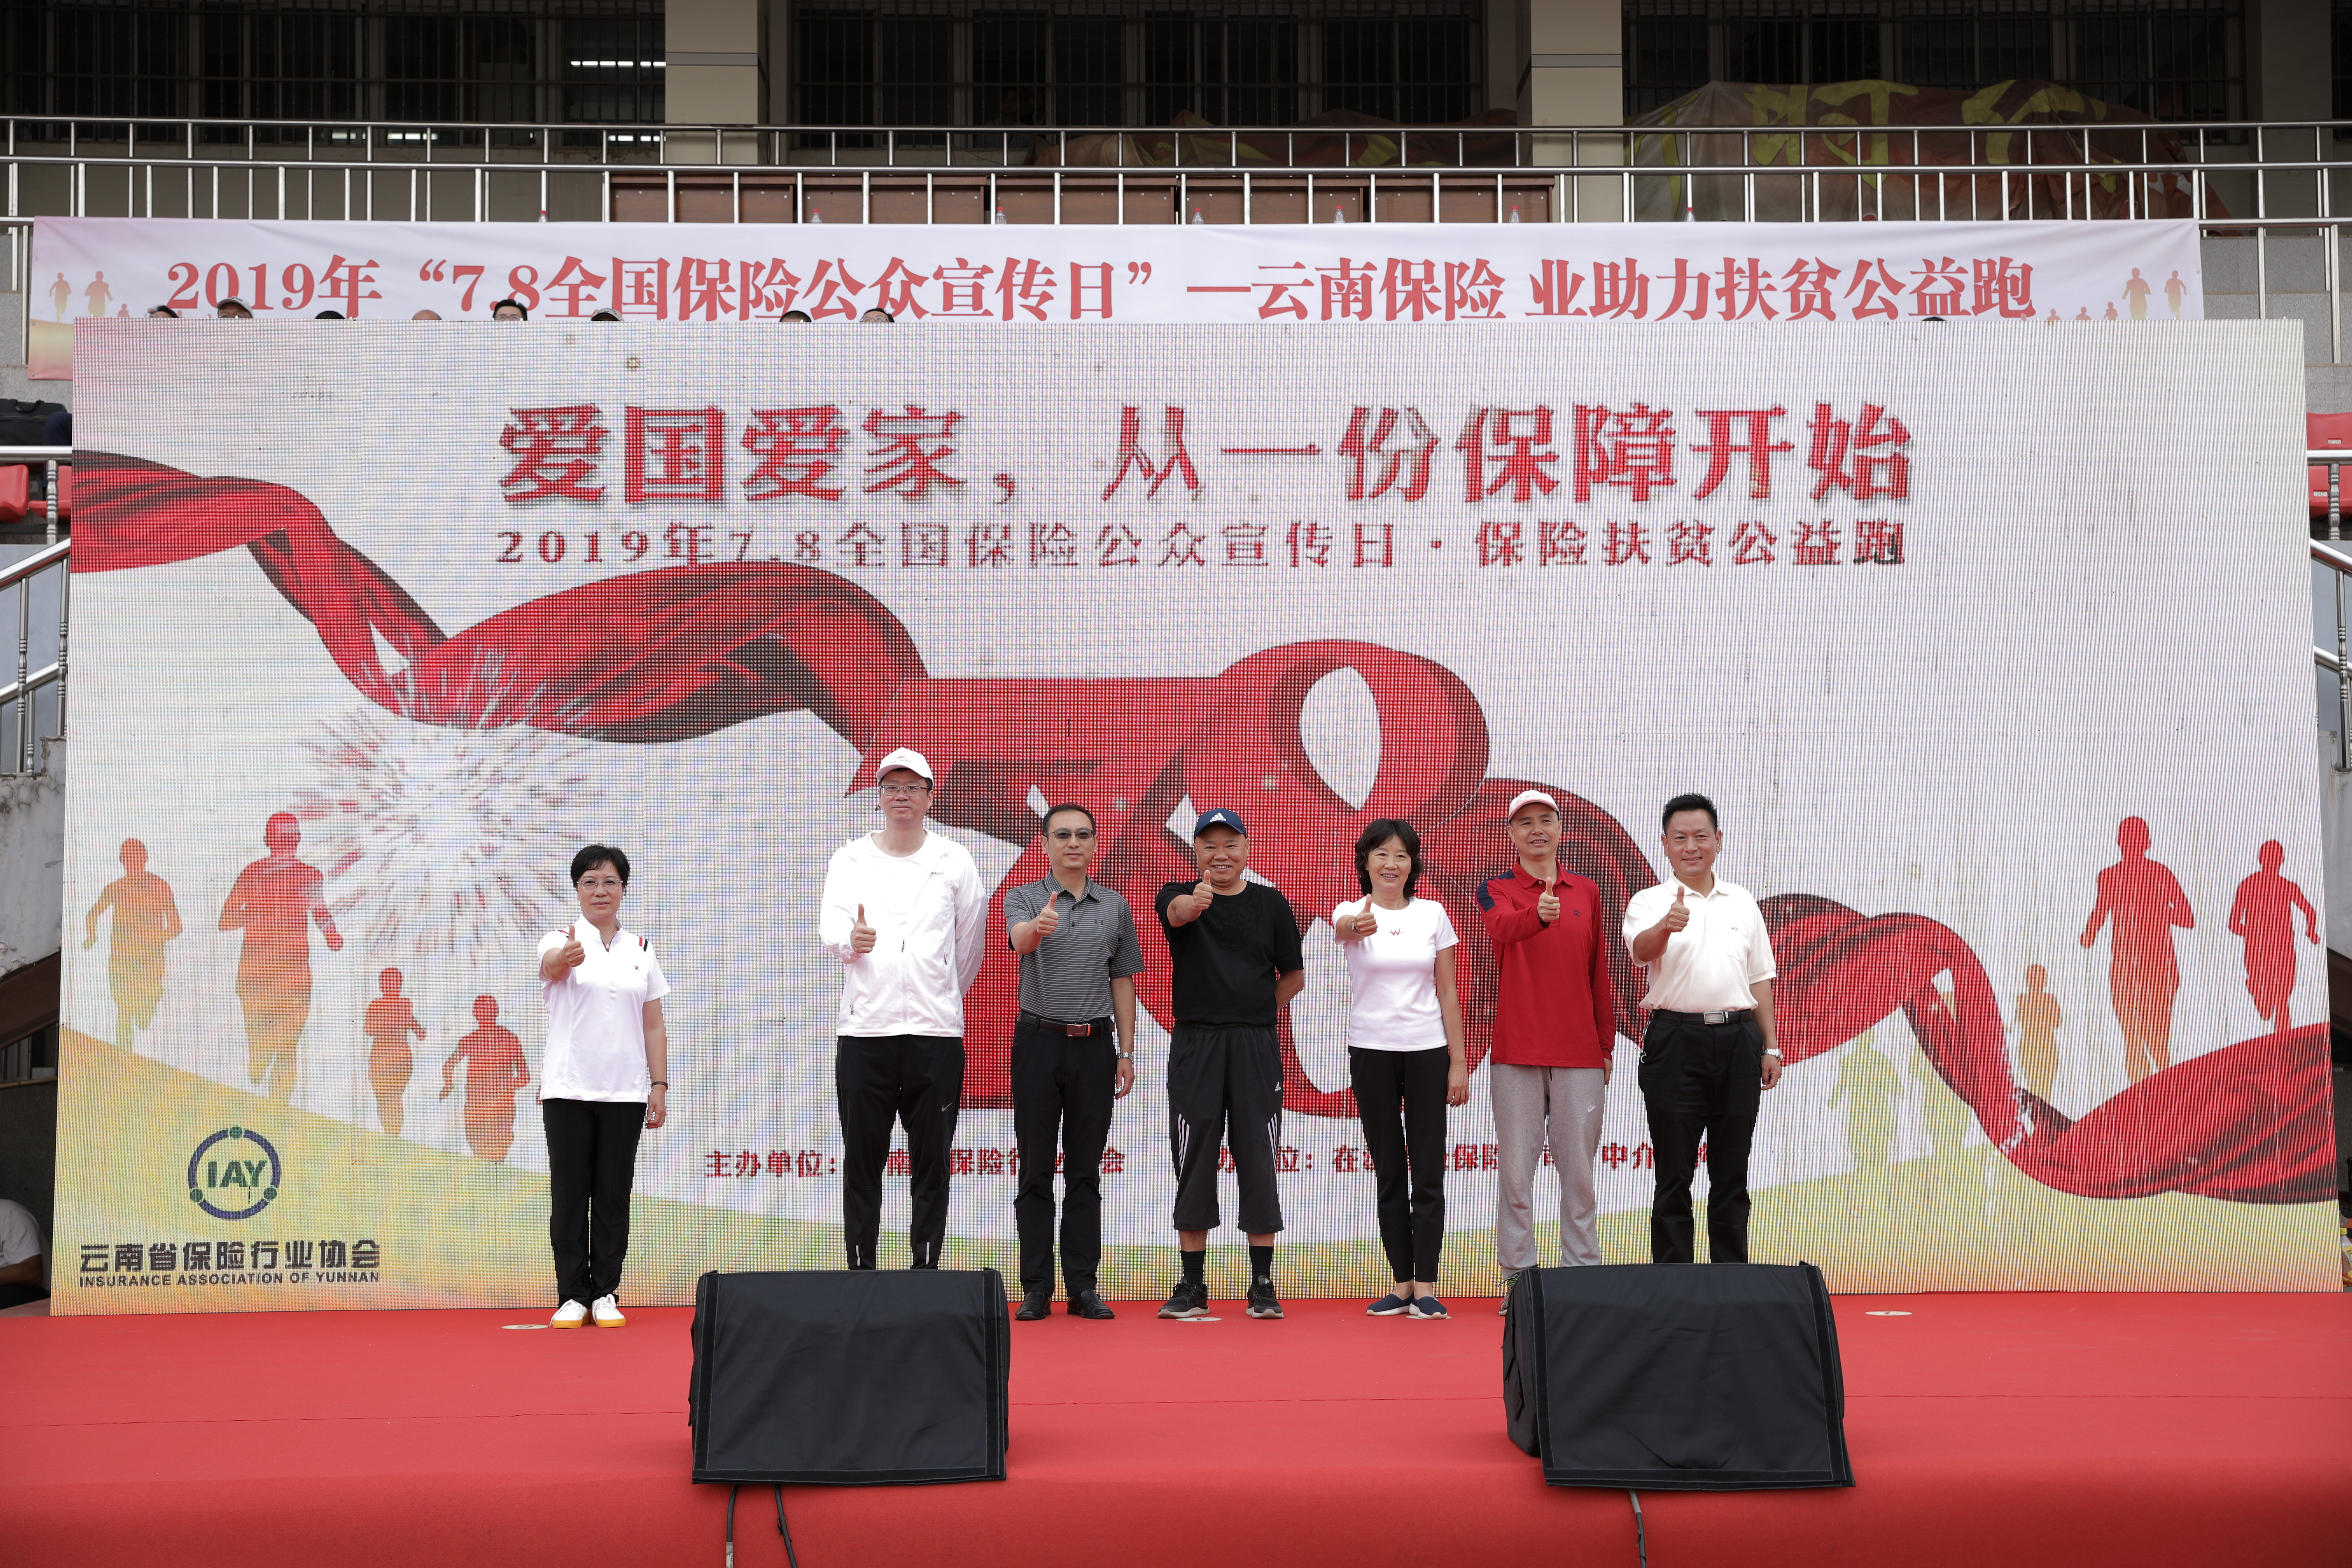 云南省保險行業協會開展7.8保險扶貧公益跑接力賽活動